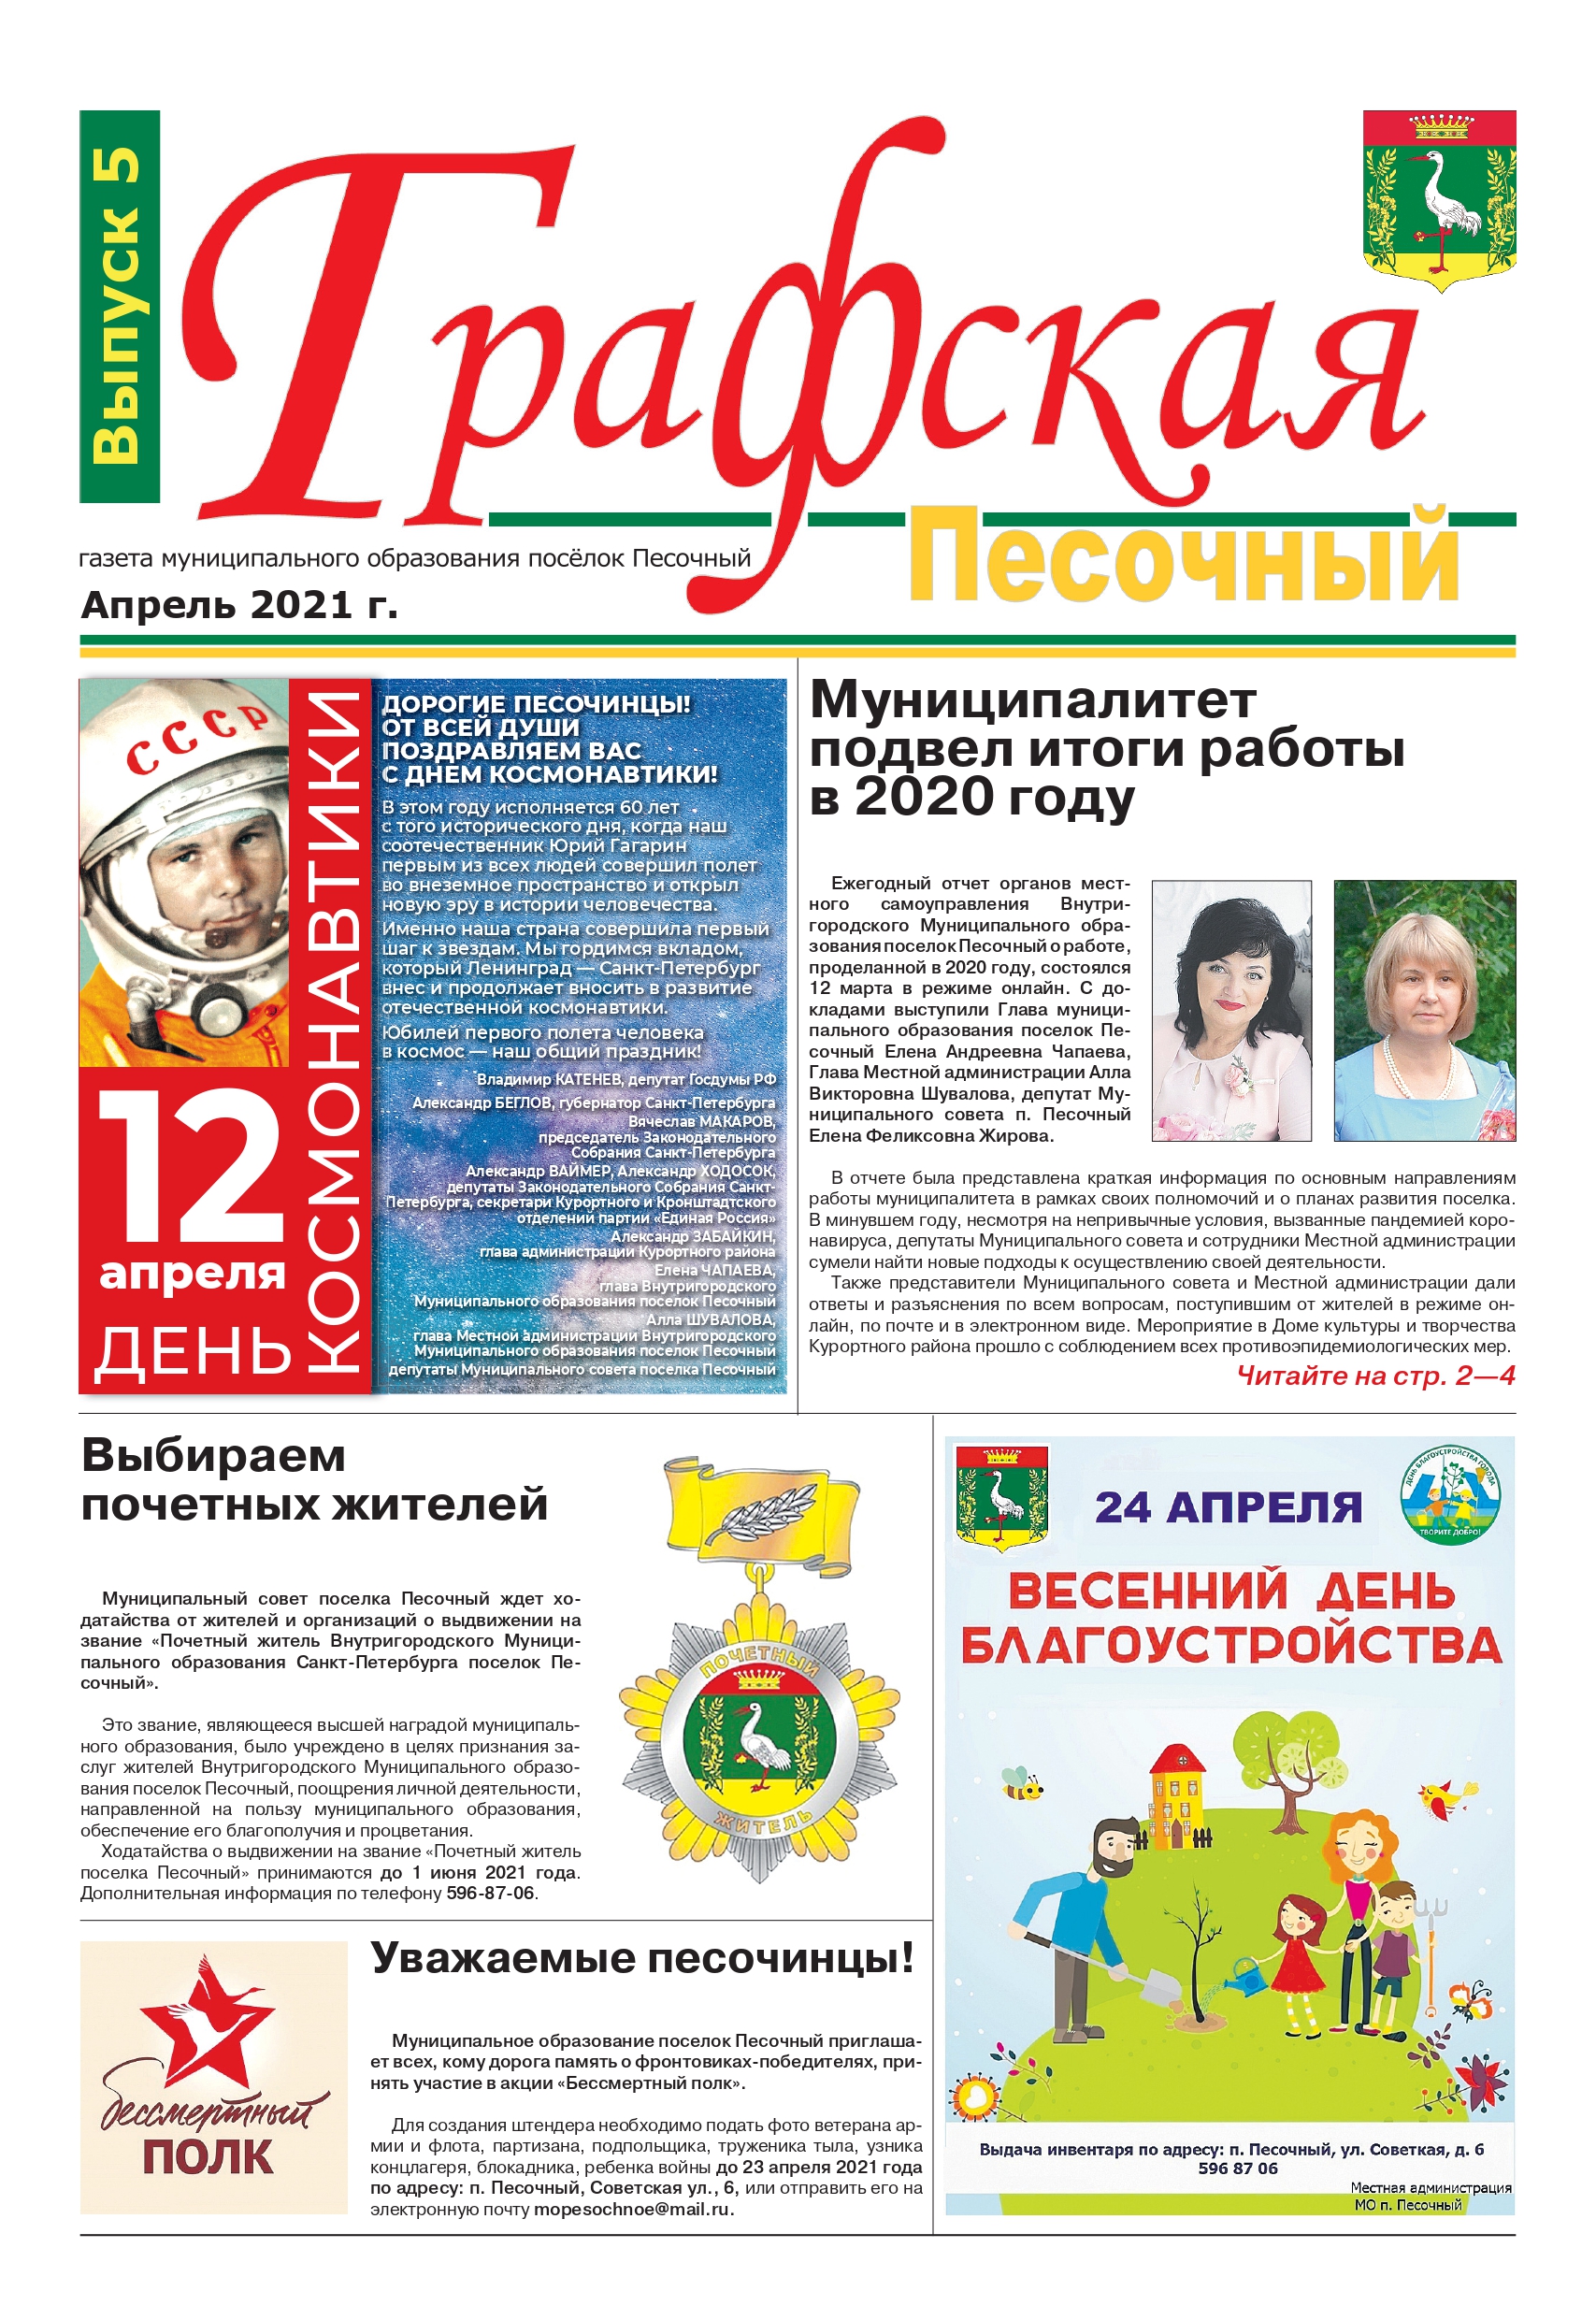 Газета "Графская" выпуск № 5, Апрель 2021